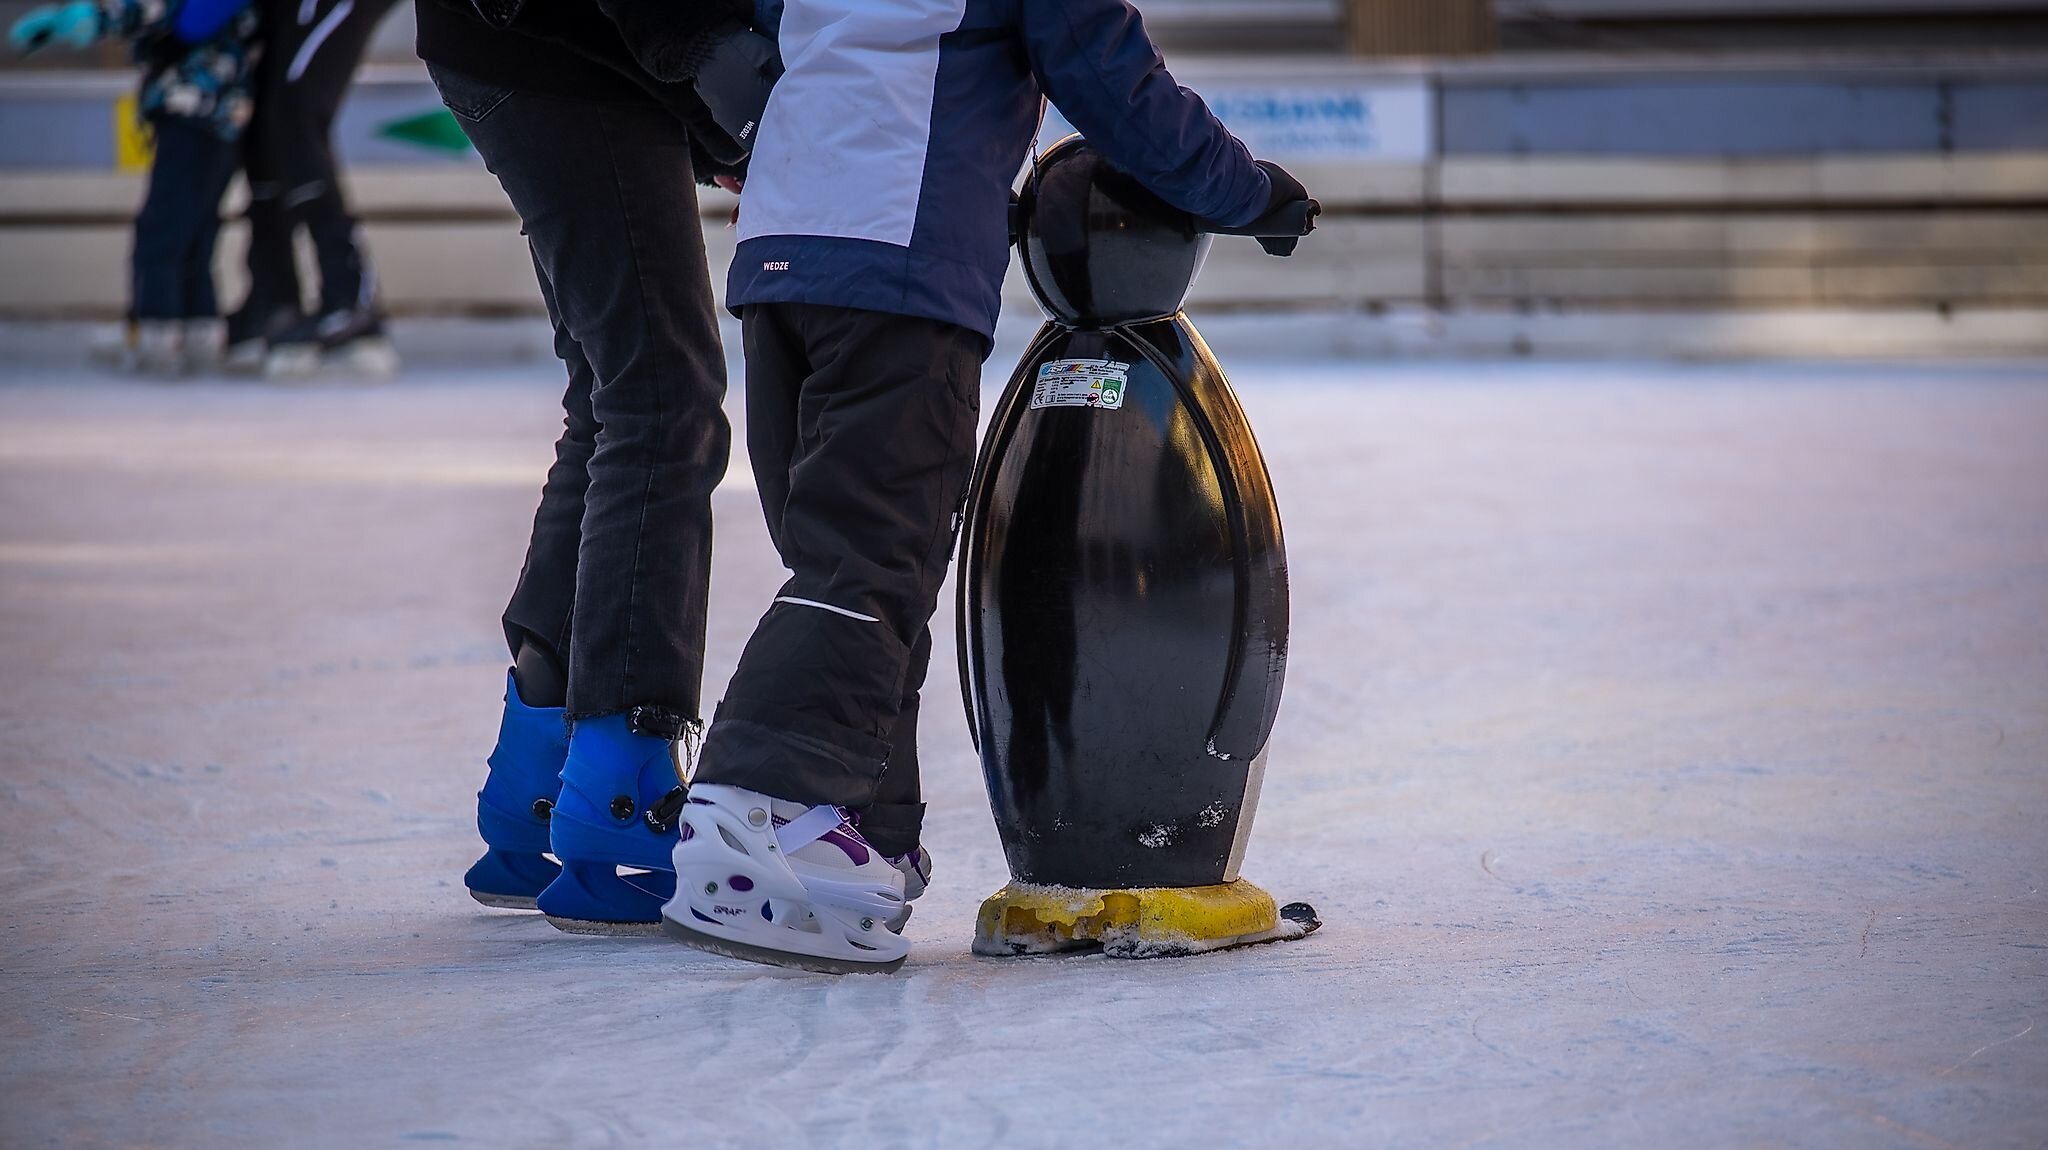 Eislaufen lernen mit Eislaufhilfe